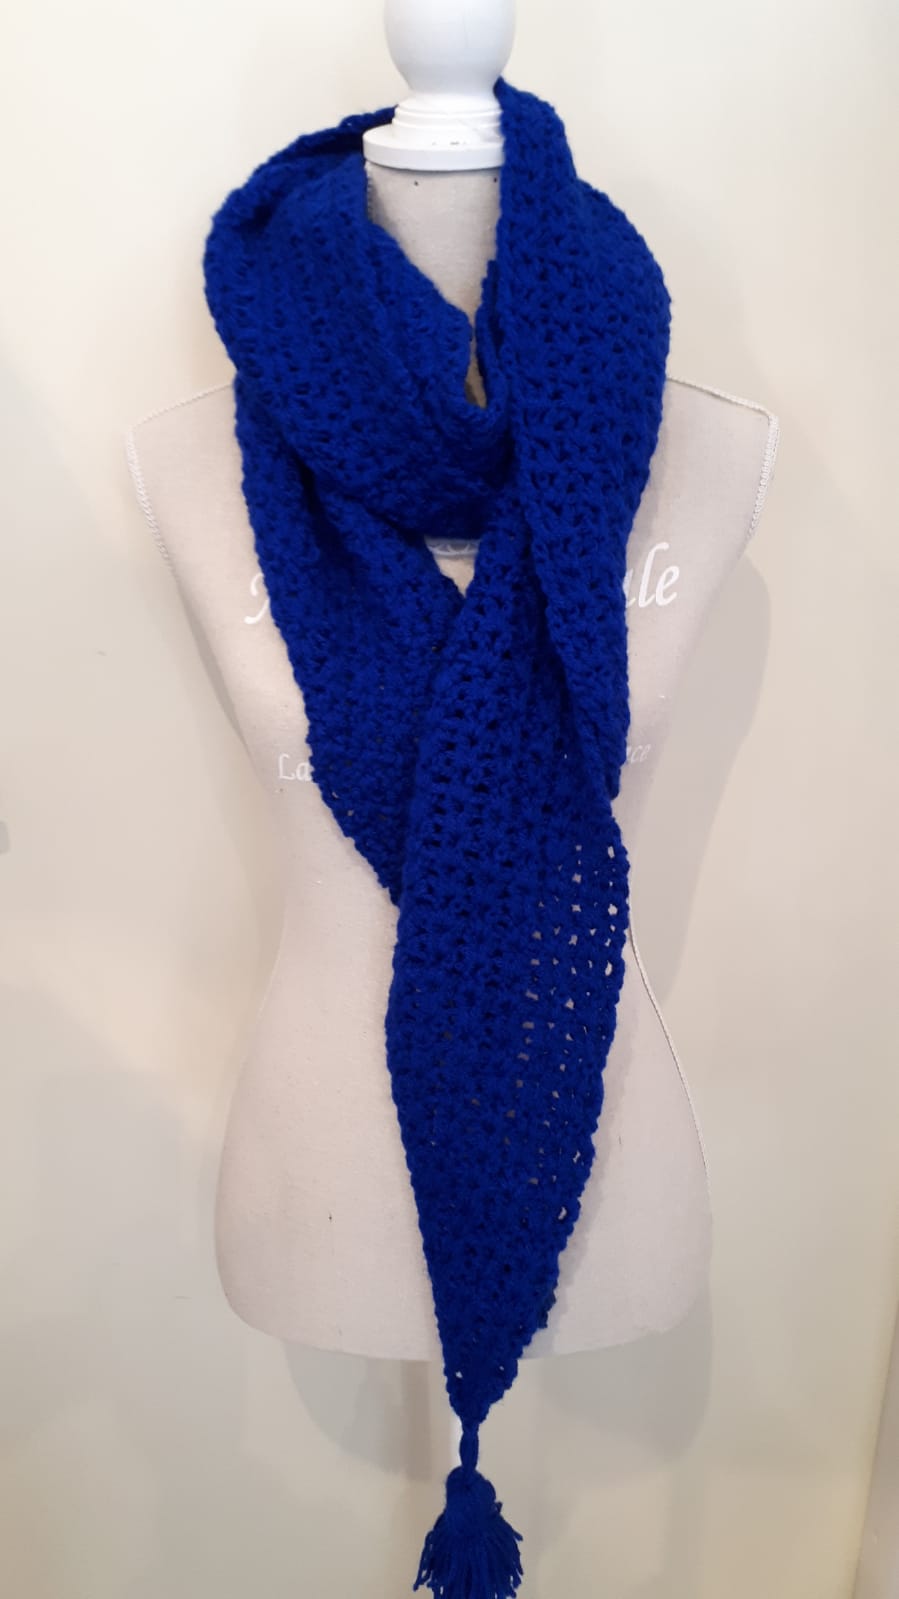 Kwestie Verscherpen verwerken Kobalt blauwe sjaal in punten – Hand made by Wiko